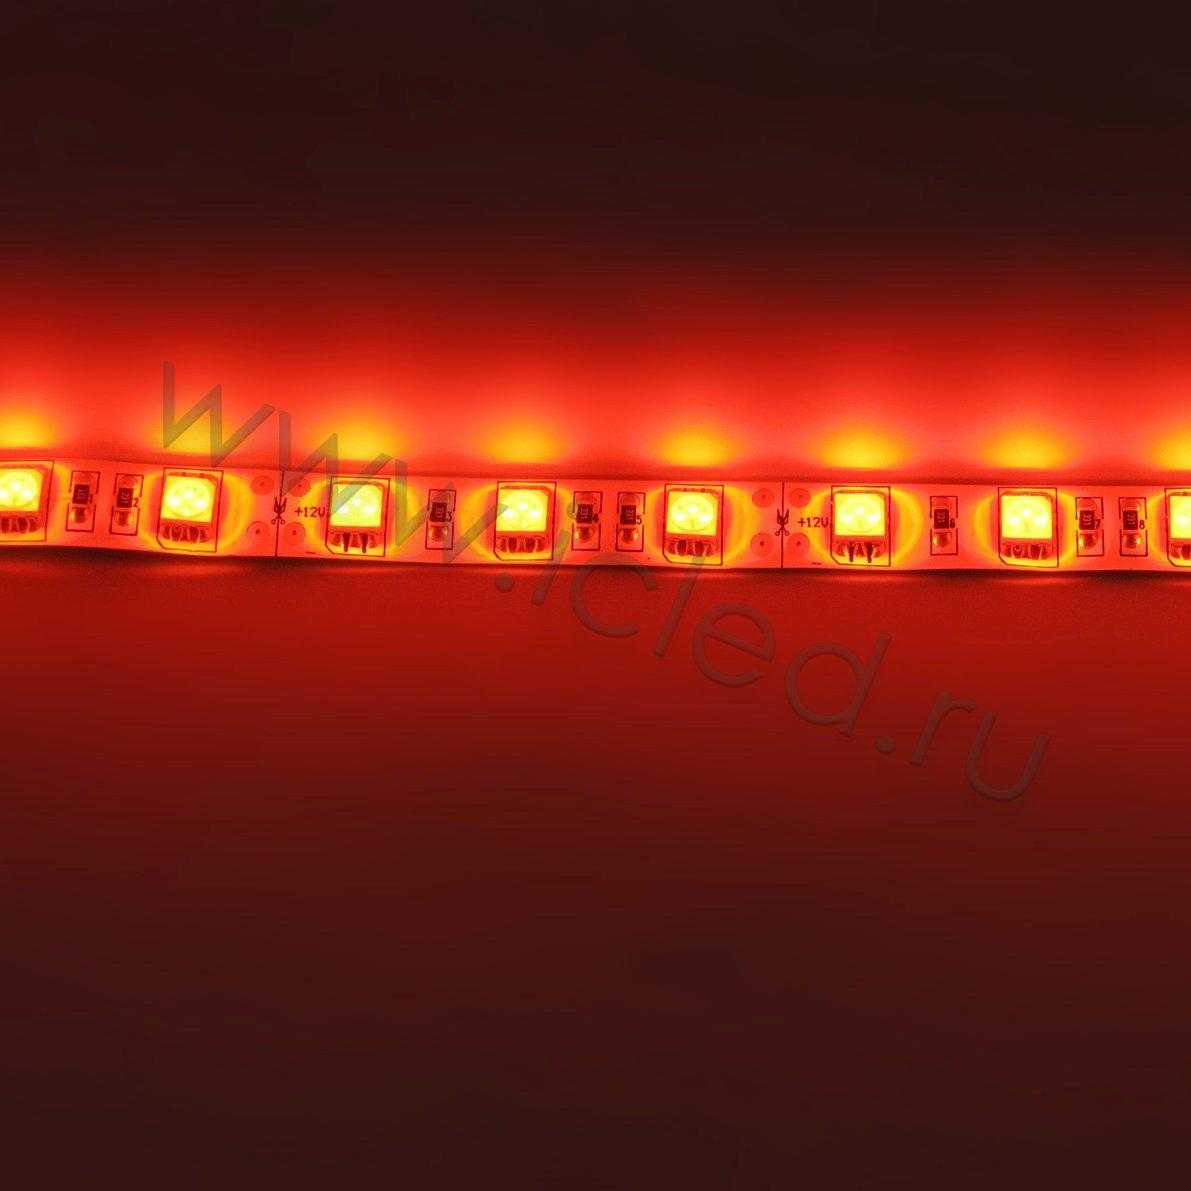 Влагозащищенные светодиодные ленты Светодиодная лента Standart PRO class, 5050, 60led/m, Red, 12V, IP65 Icled